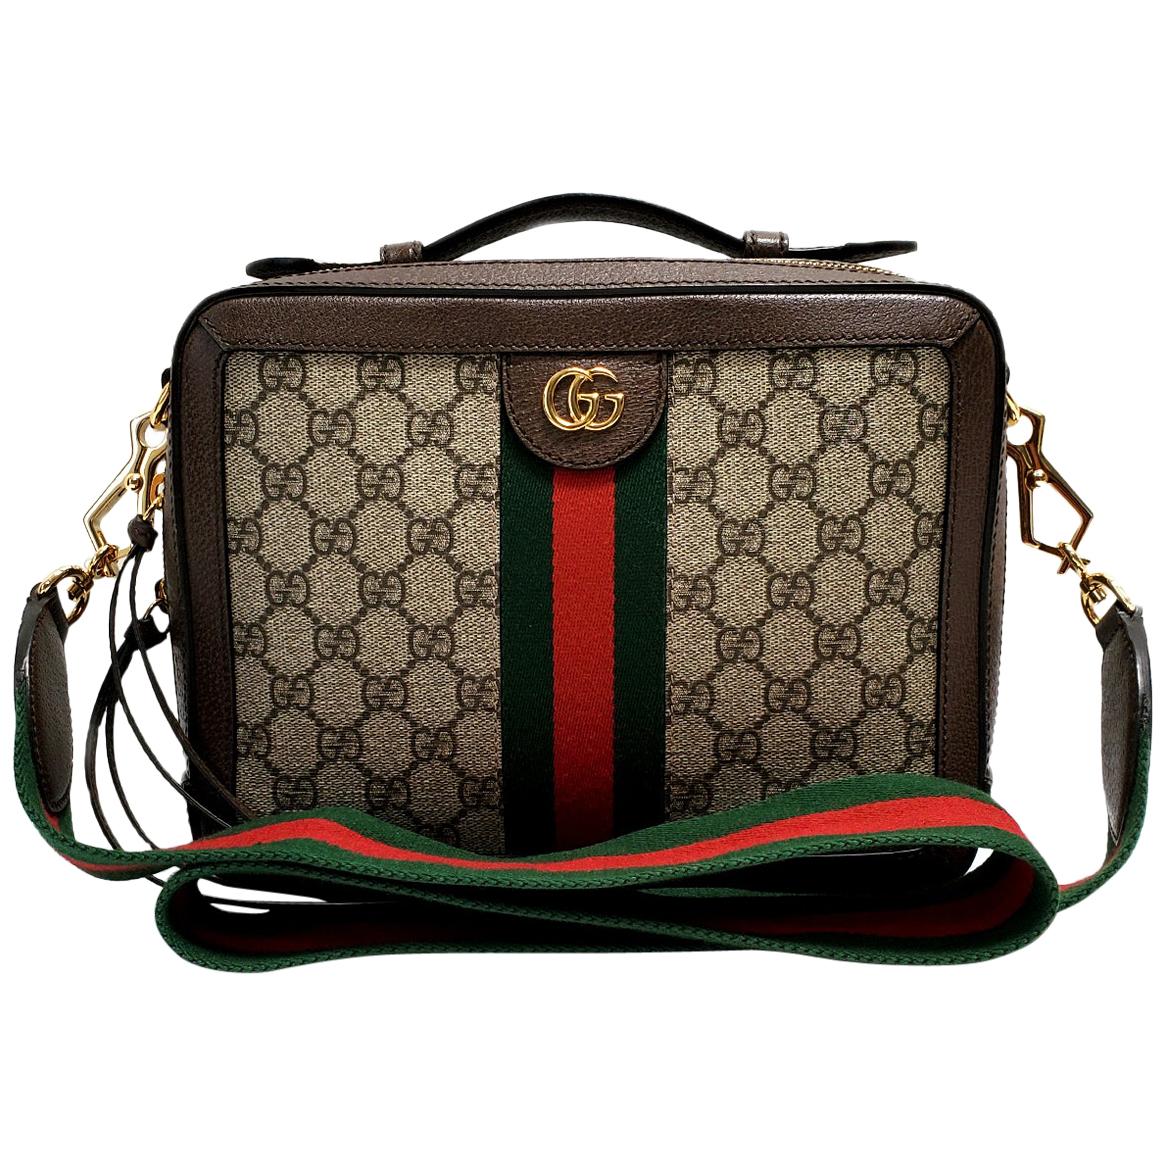 Gucci Ophelia Brown GG Supreme Top Handle Handbag